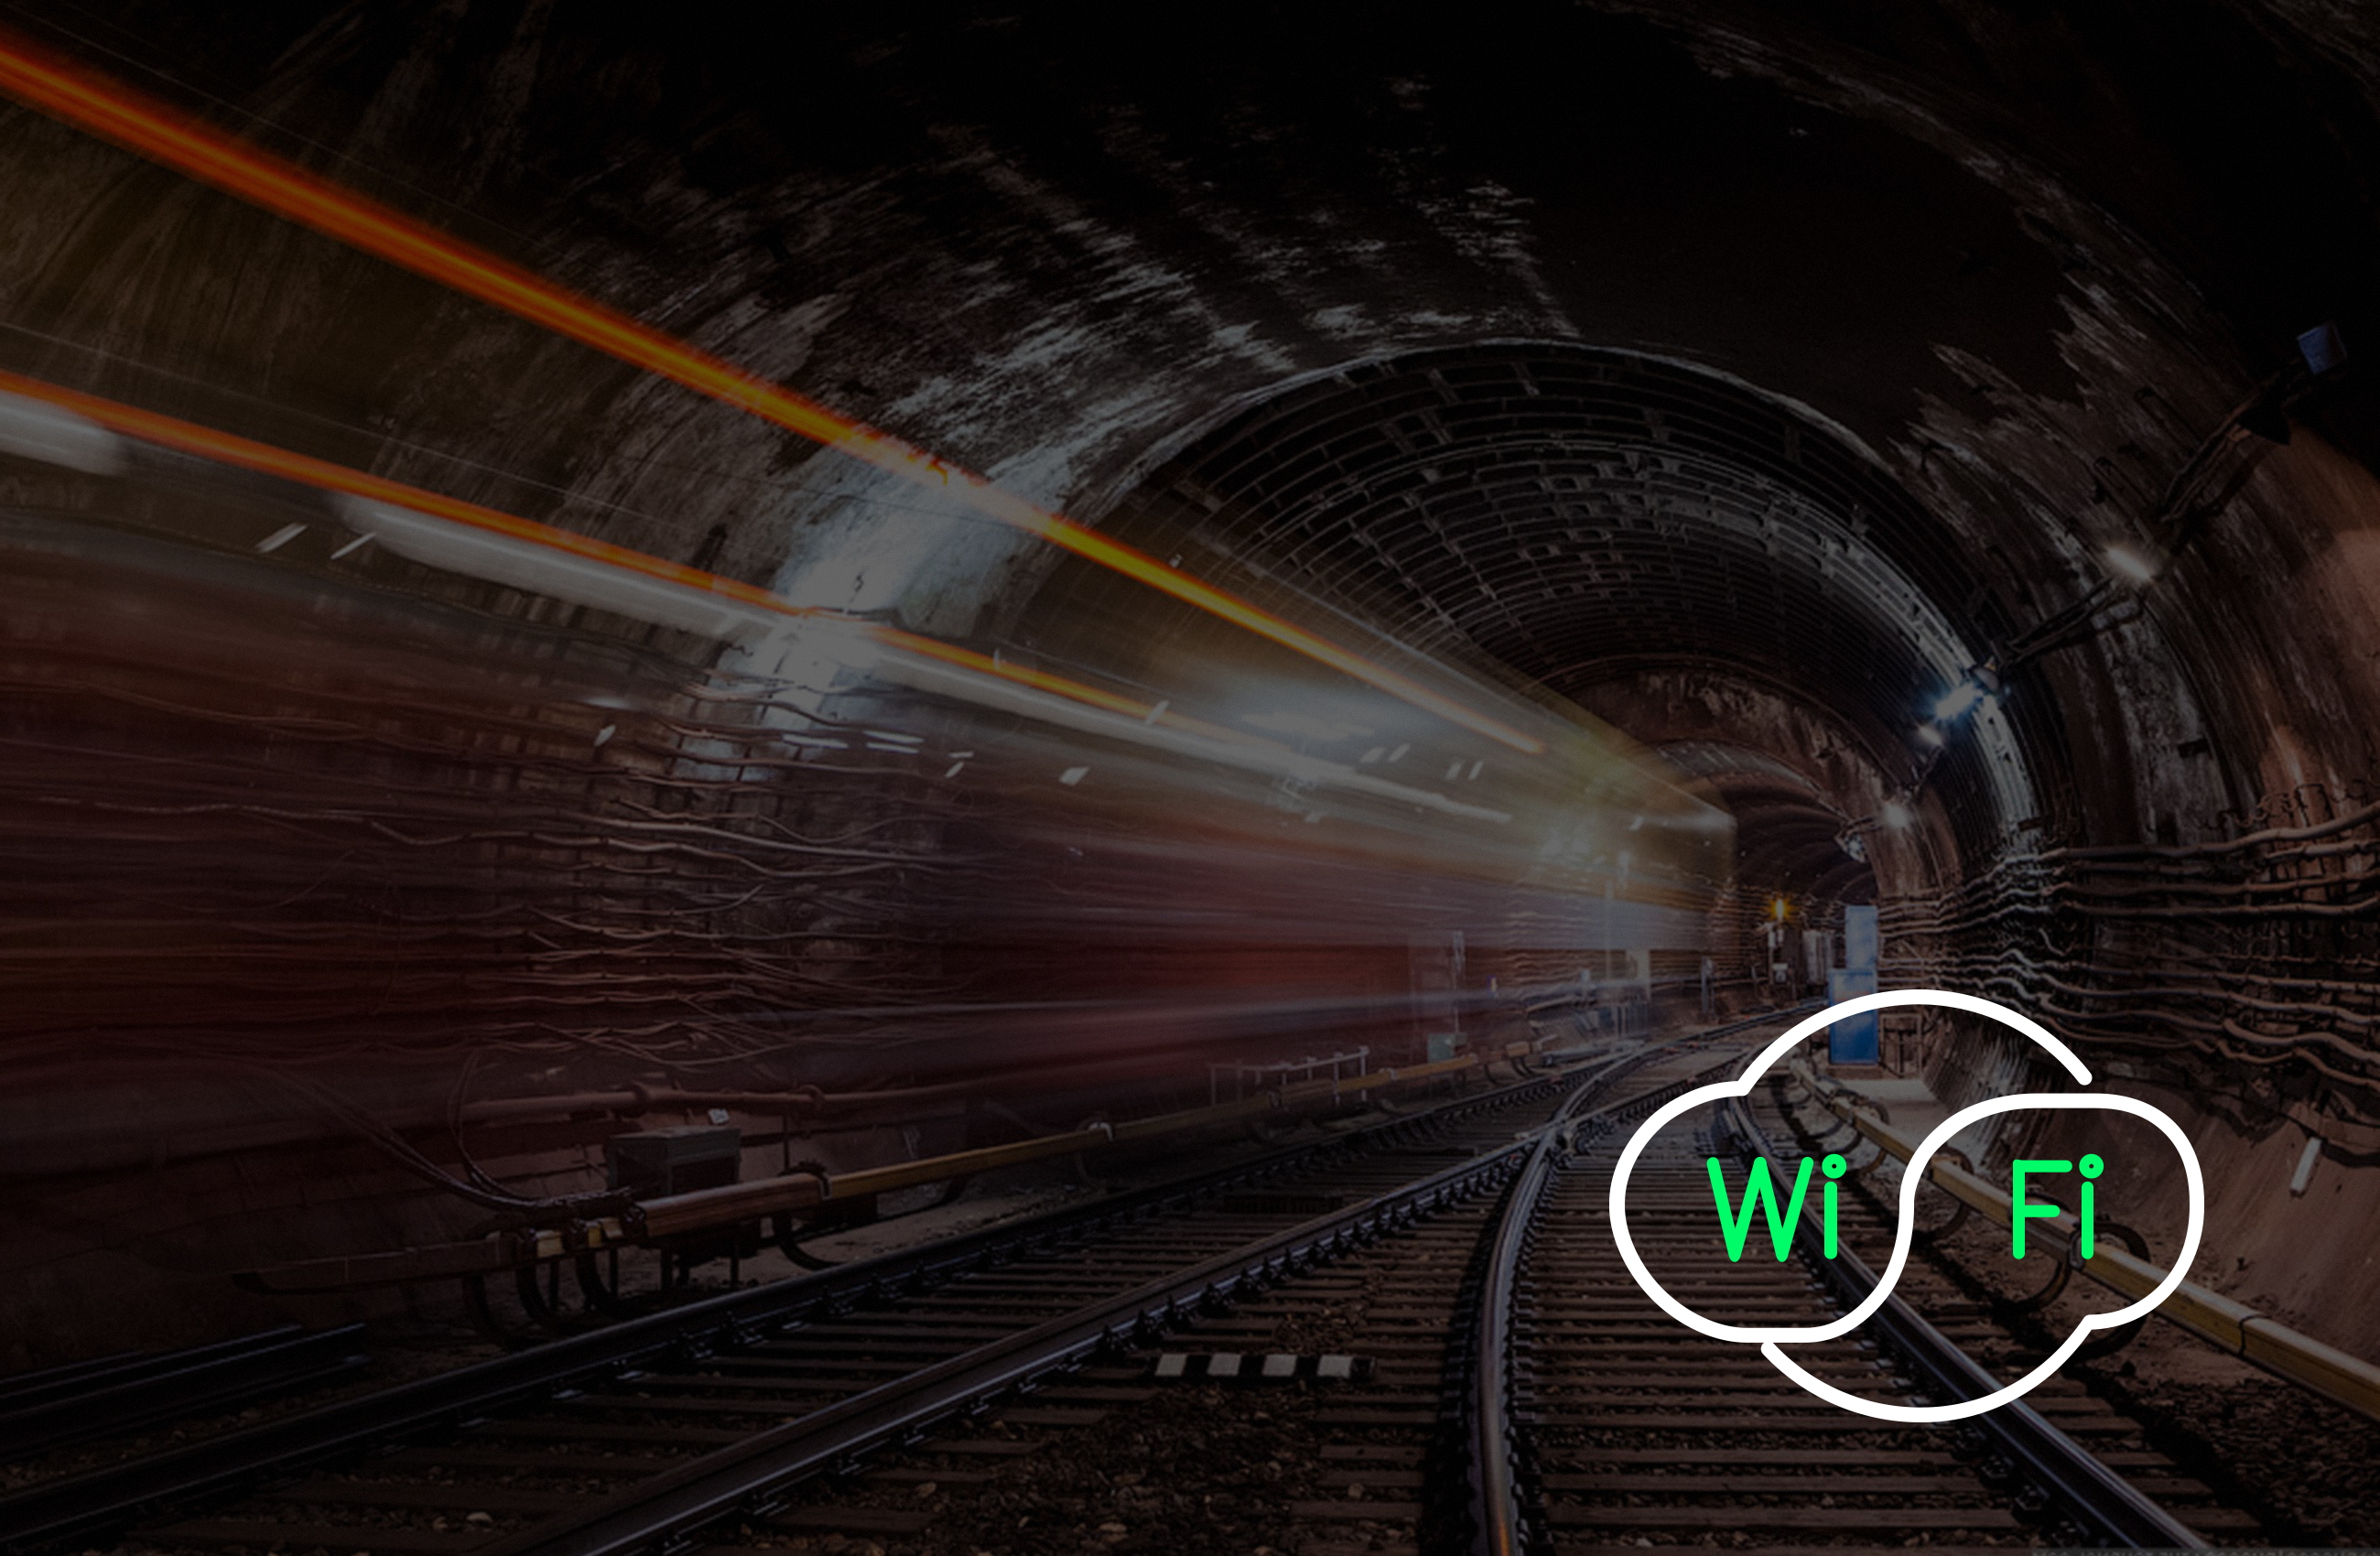 Почему iPhone не подключается к сети Wi-Fi в метро